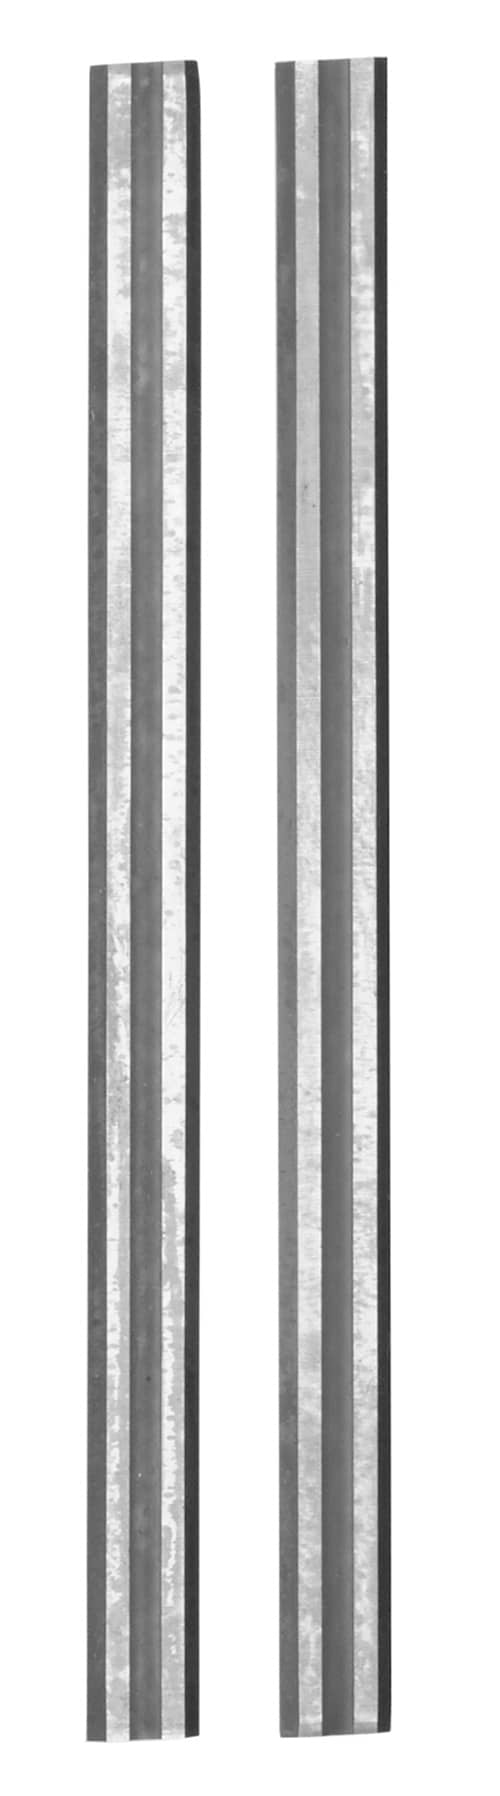 KWB Høveljern, hardmetall, 83 mm, 2 stk., på SB-kort